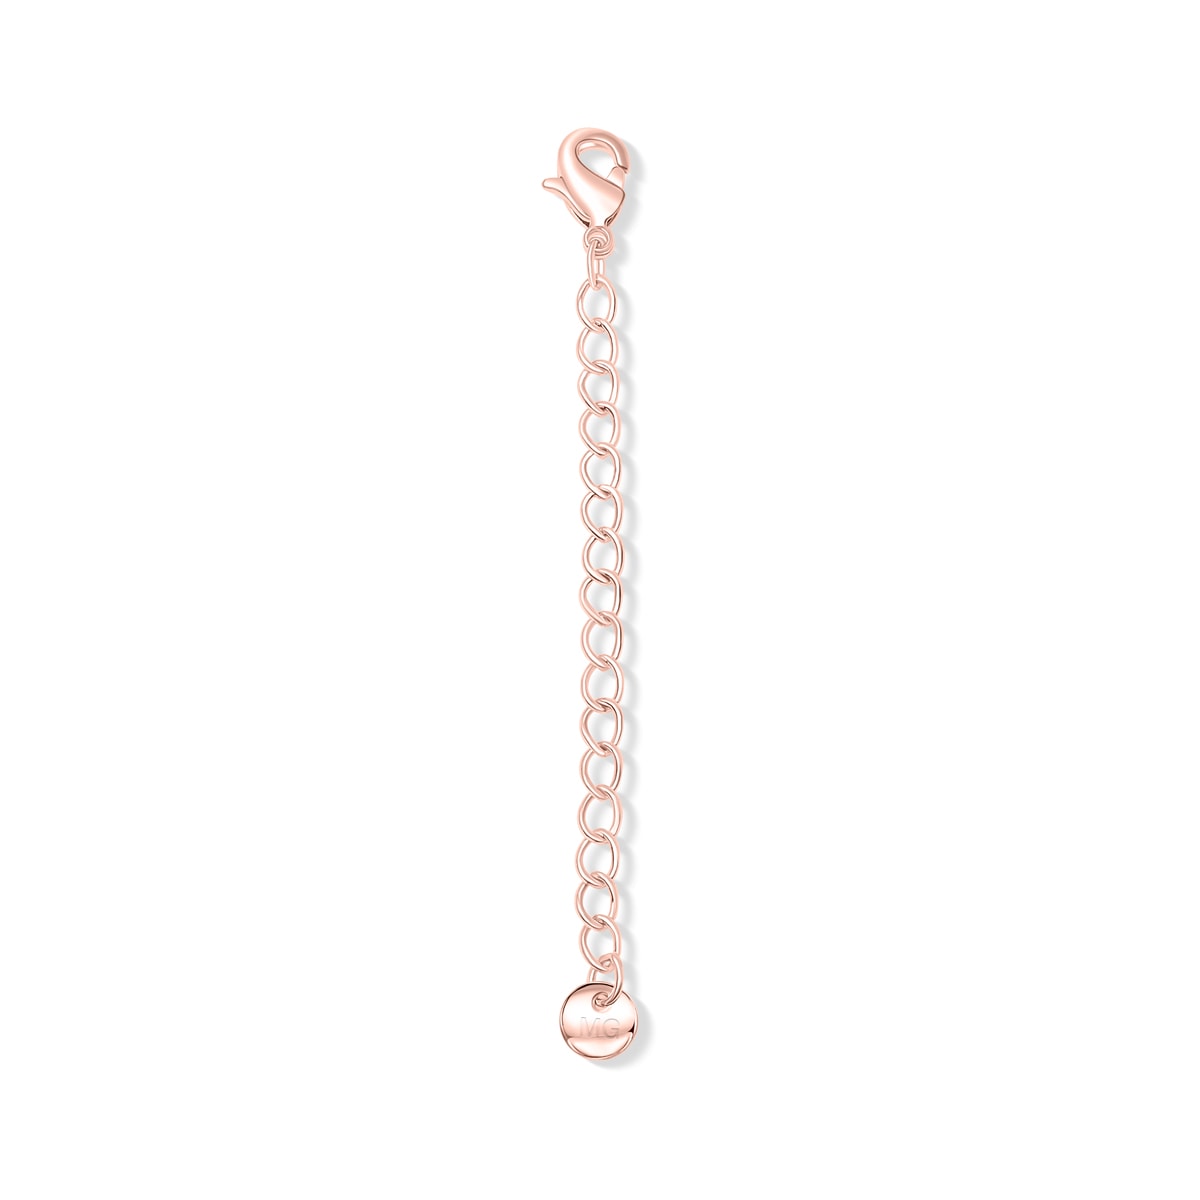 Rose gold necklace extender